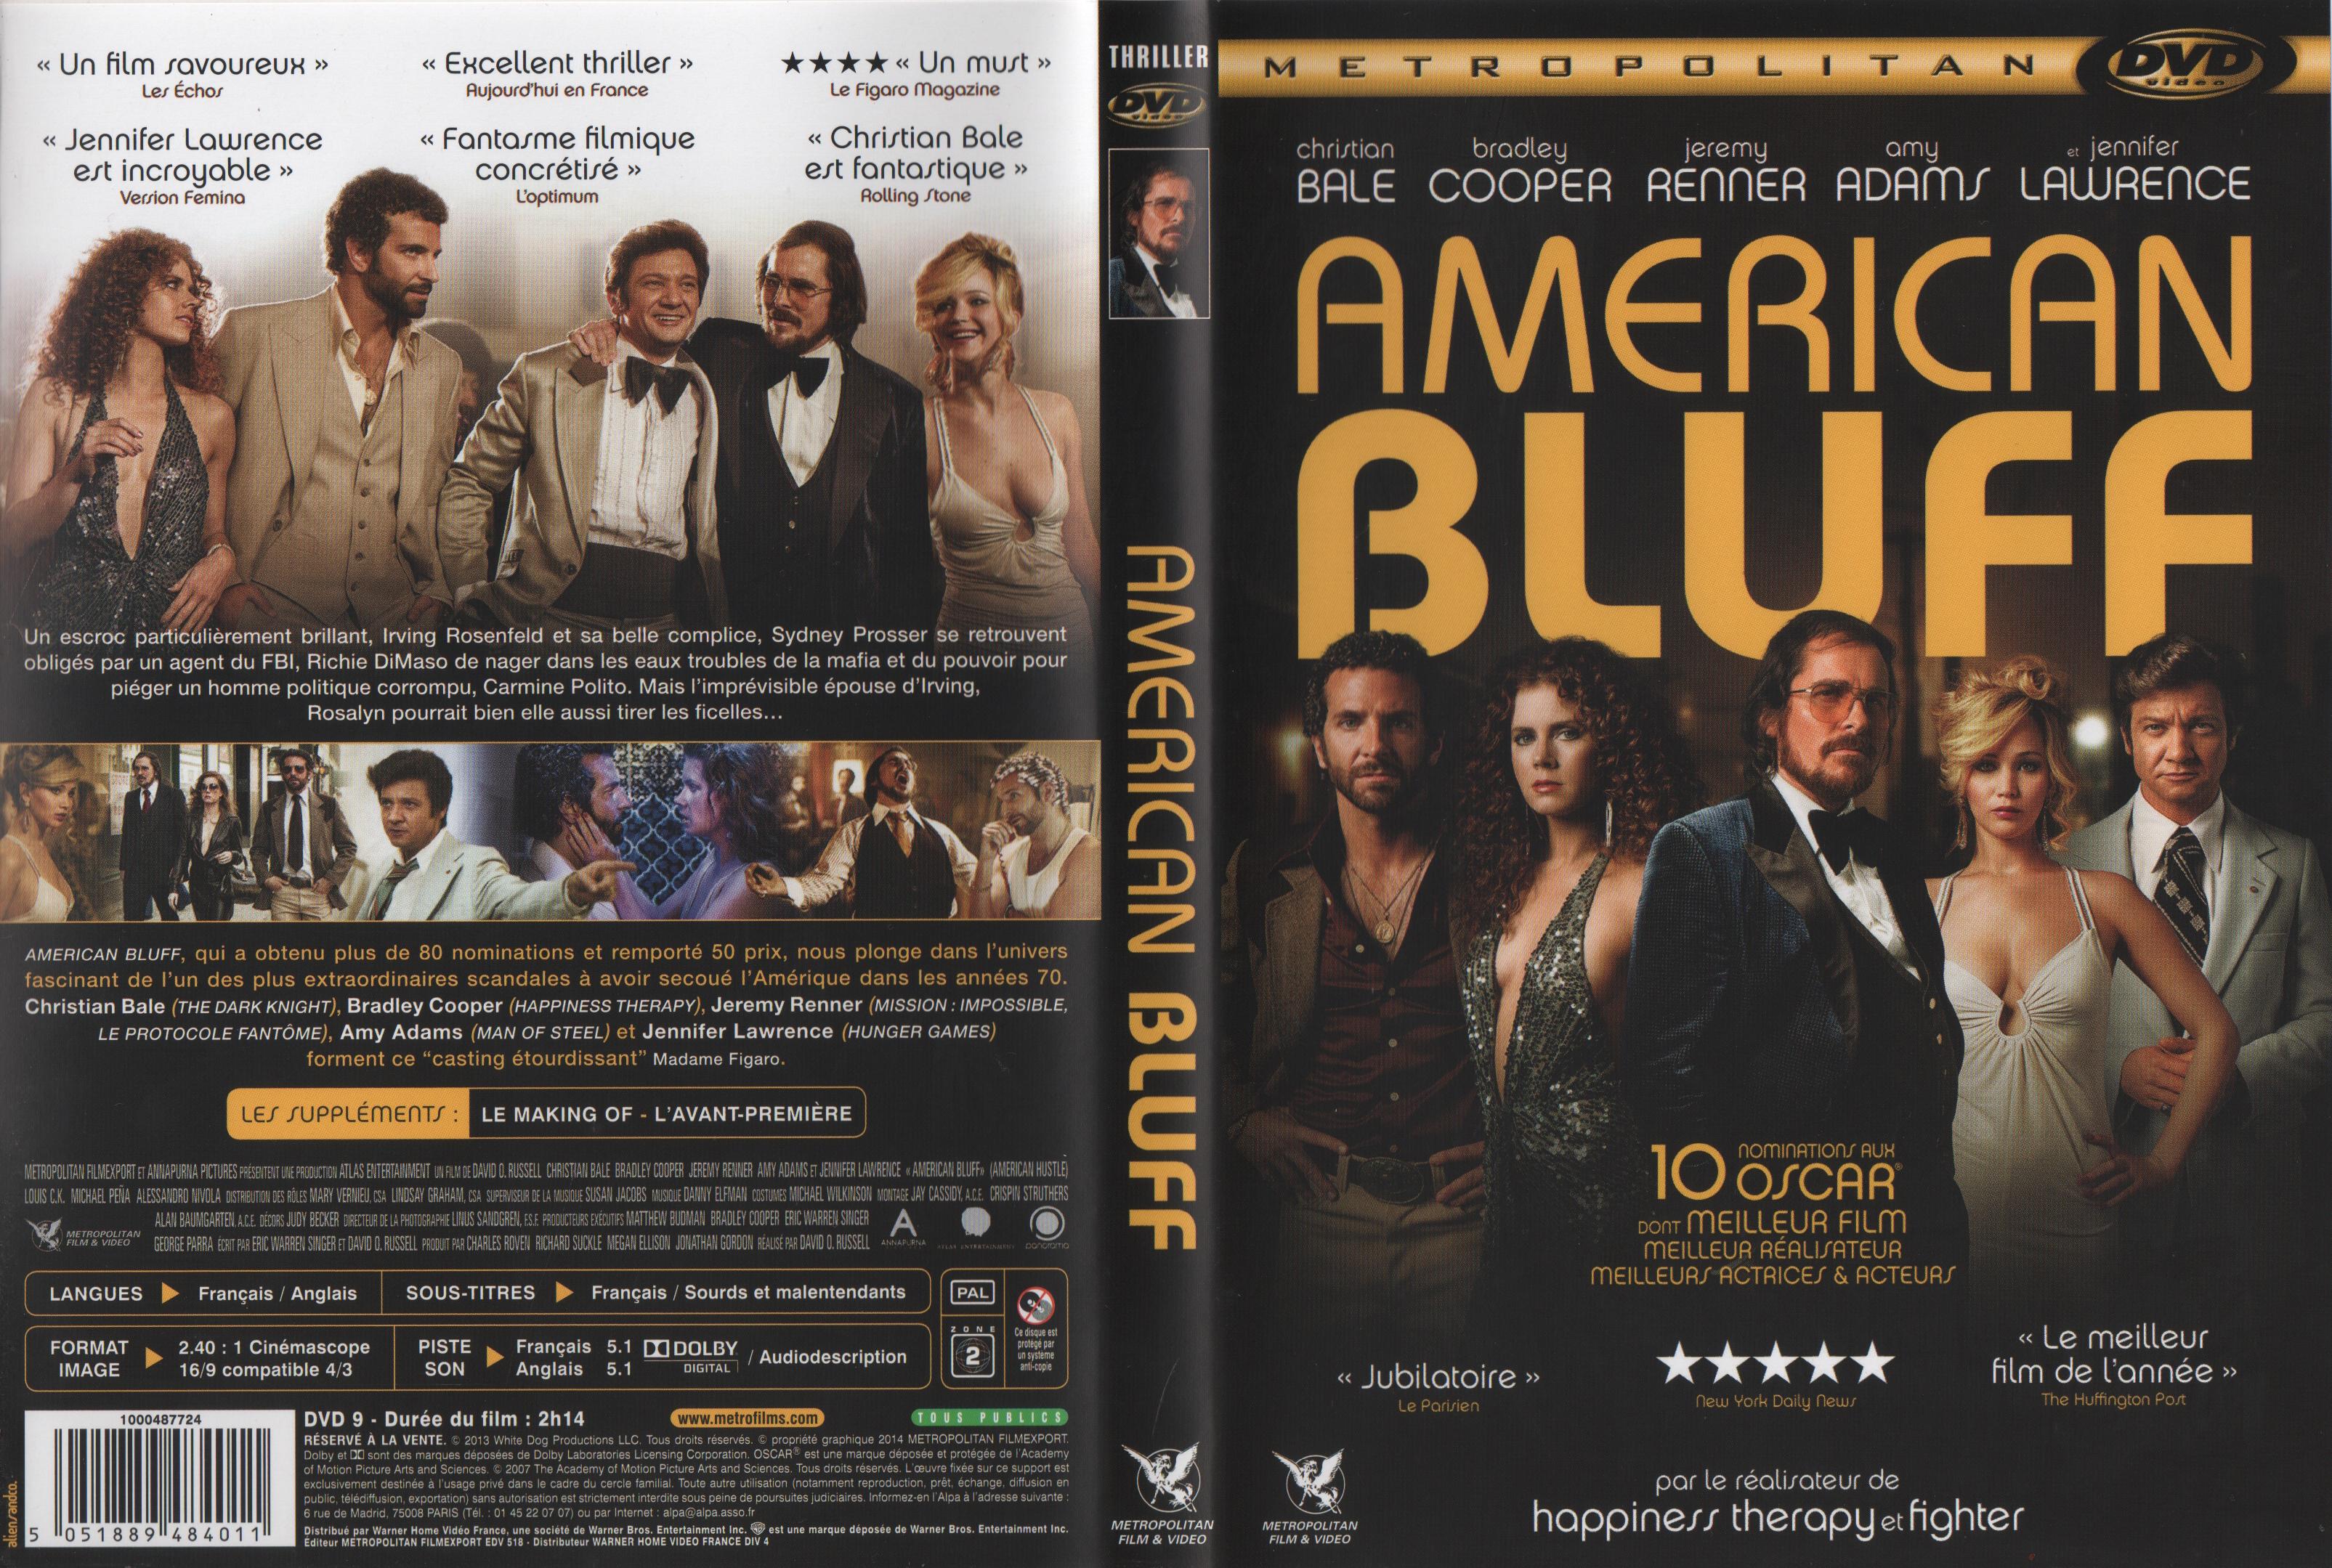 Jaquette DVD American Bluff